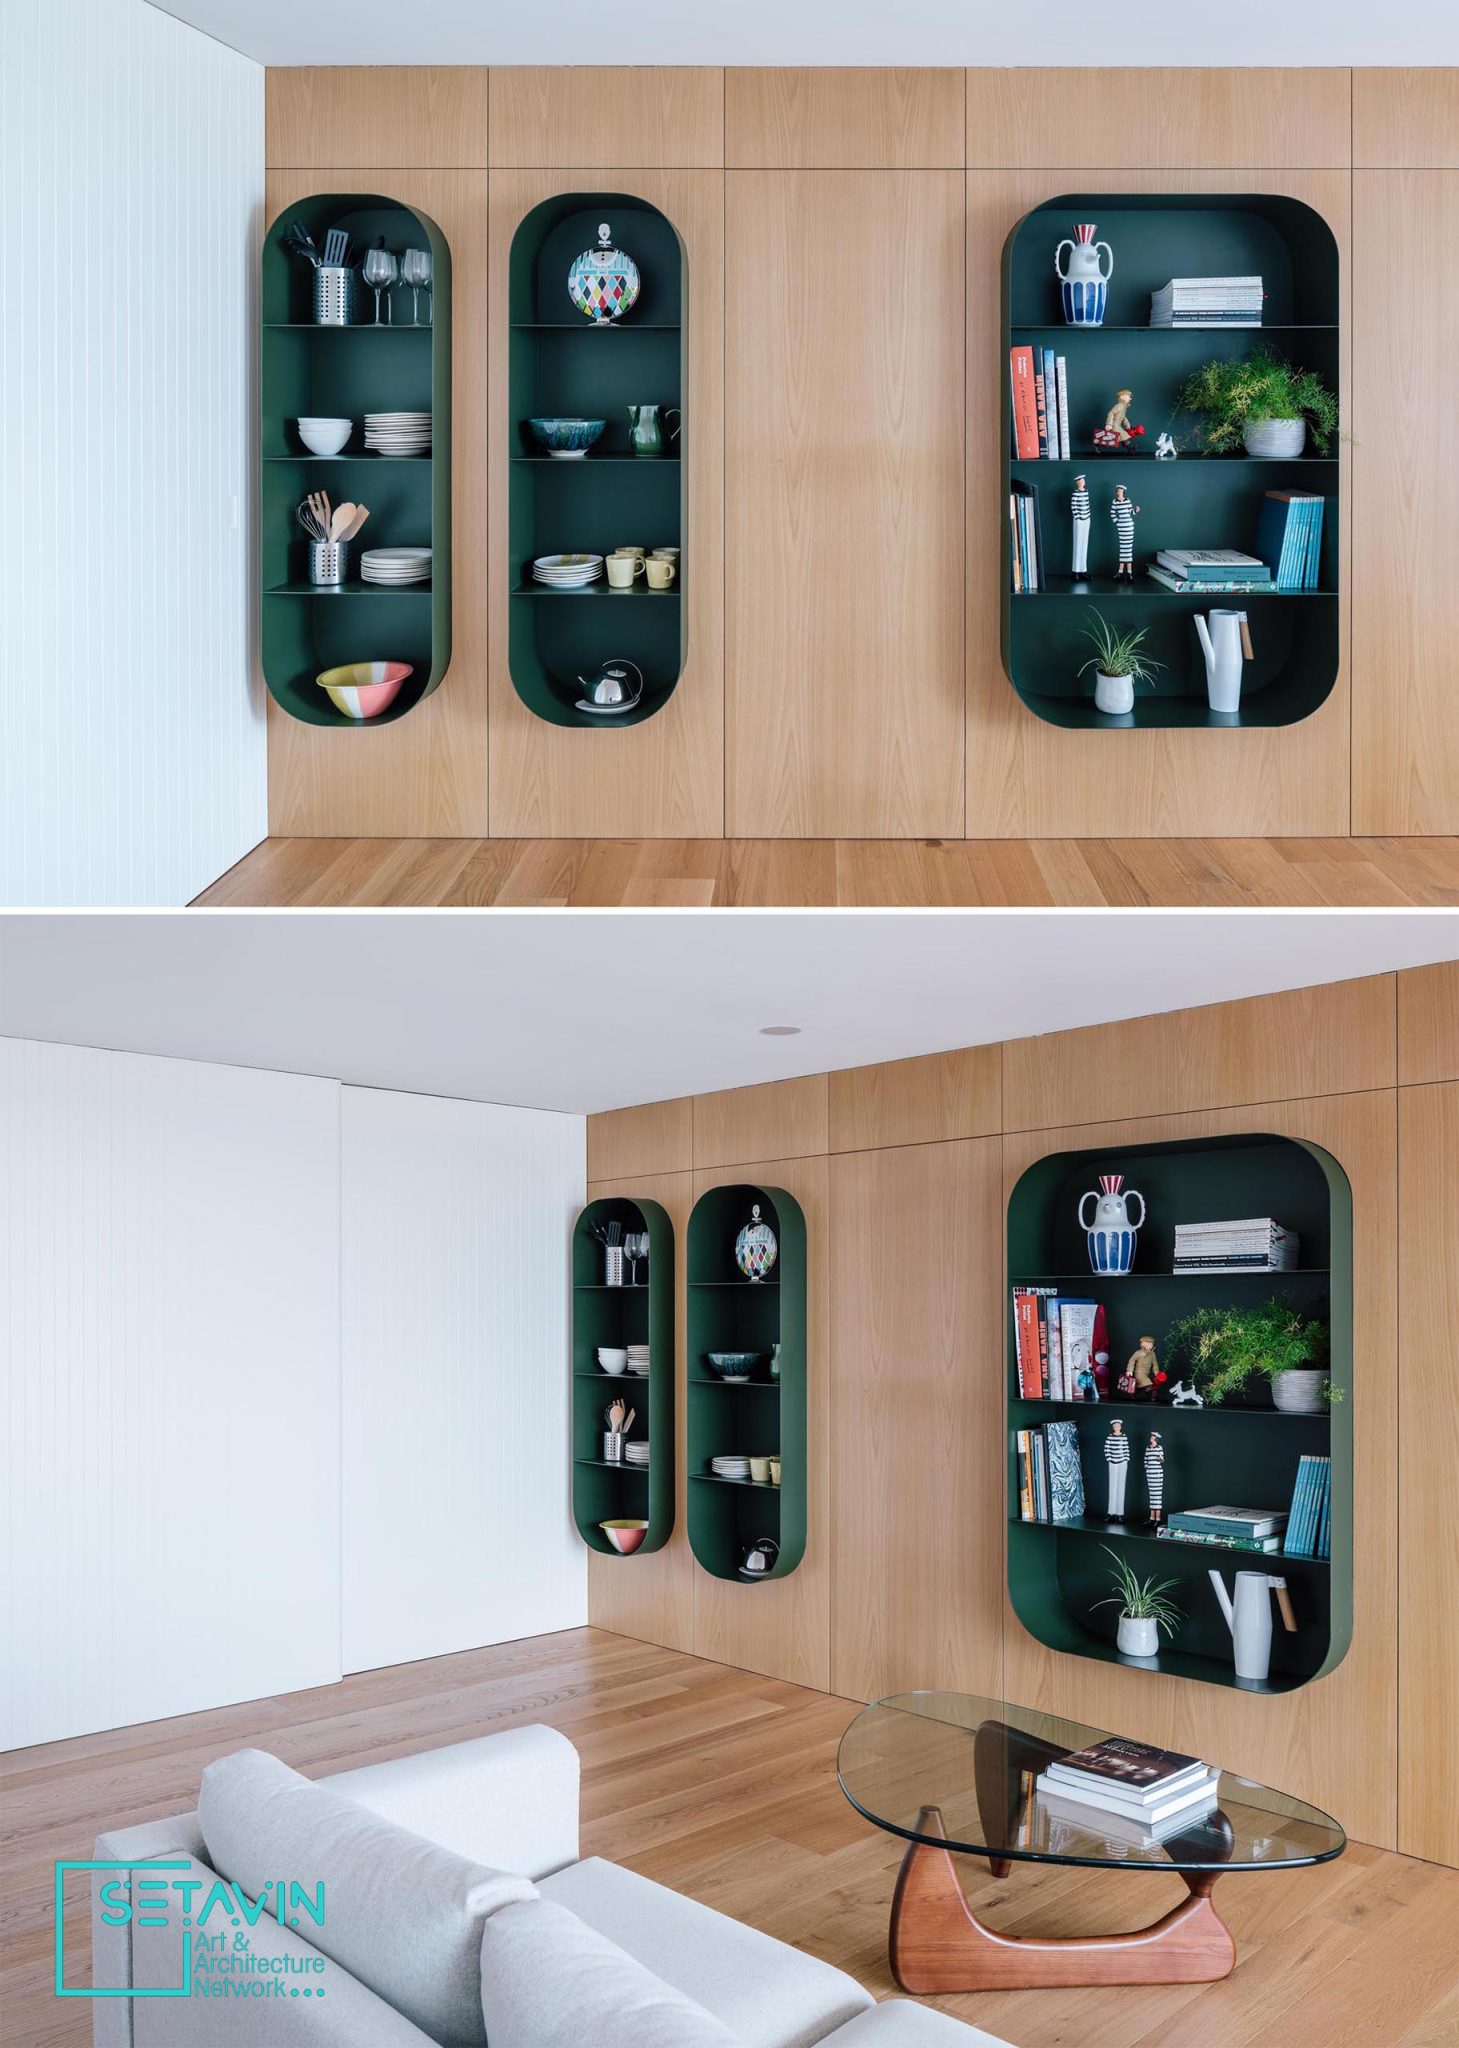 طراحی قابل توجه طبقات و شلف ها در آپارتمانی در اسپانیا